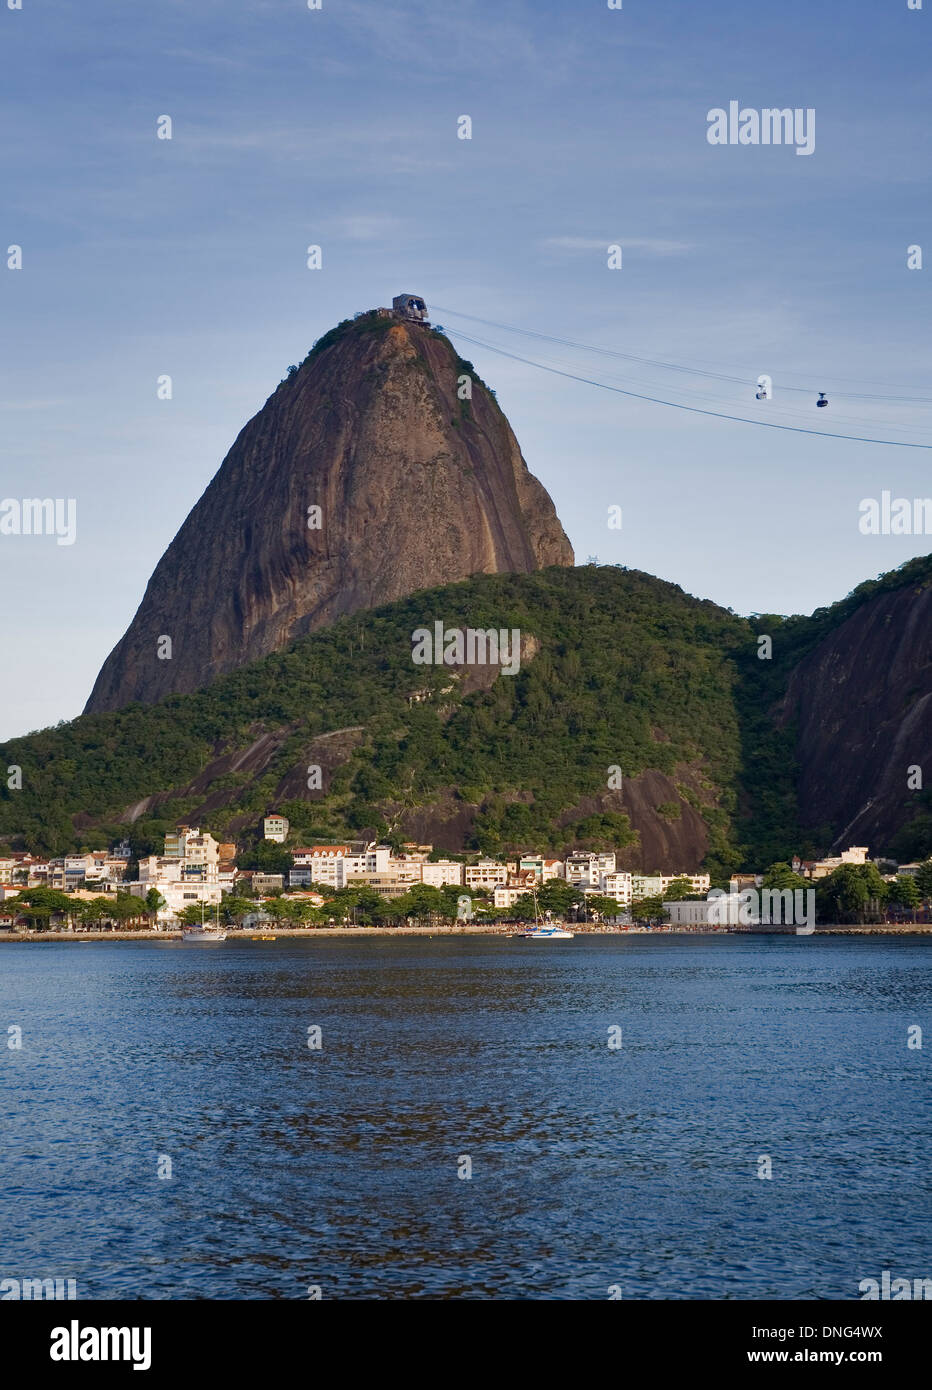 Avis de suga miche à Rio de Janeiro. Brésil. Banque D'Images